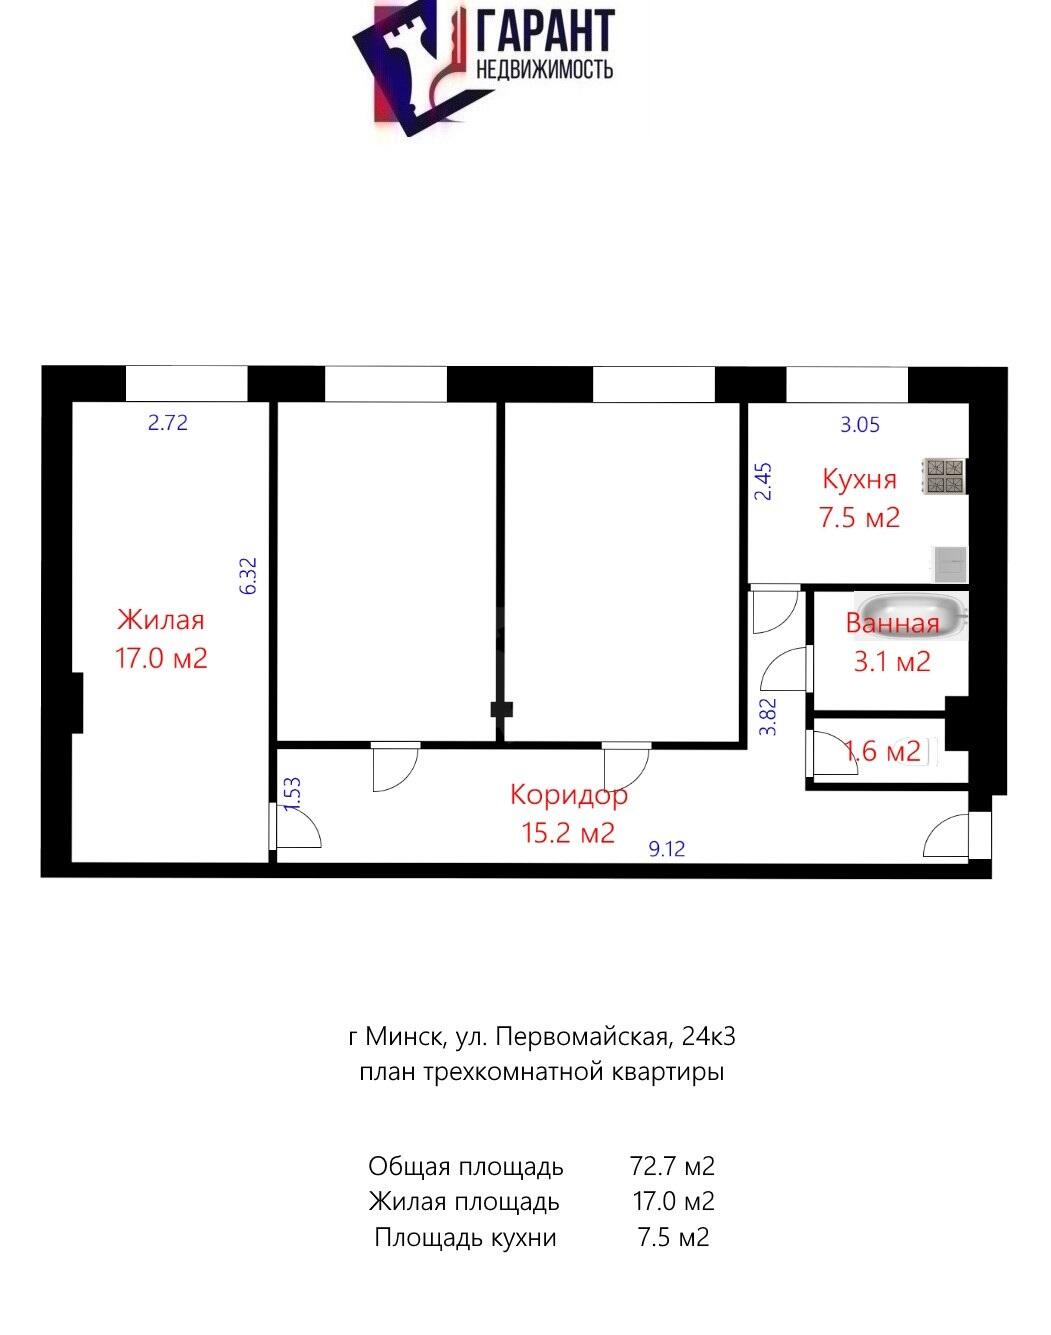 Купить комнату в Минске, ул. Первомайская, д. 24/3, цена 35000 USD, код 6365 - фото 1